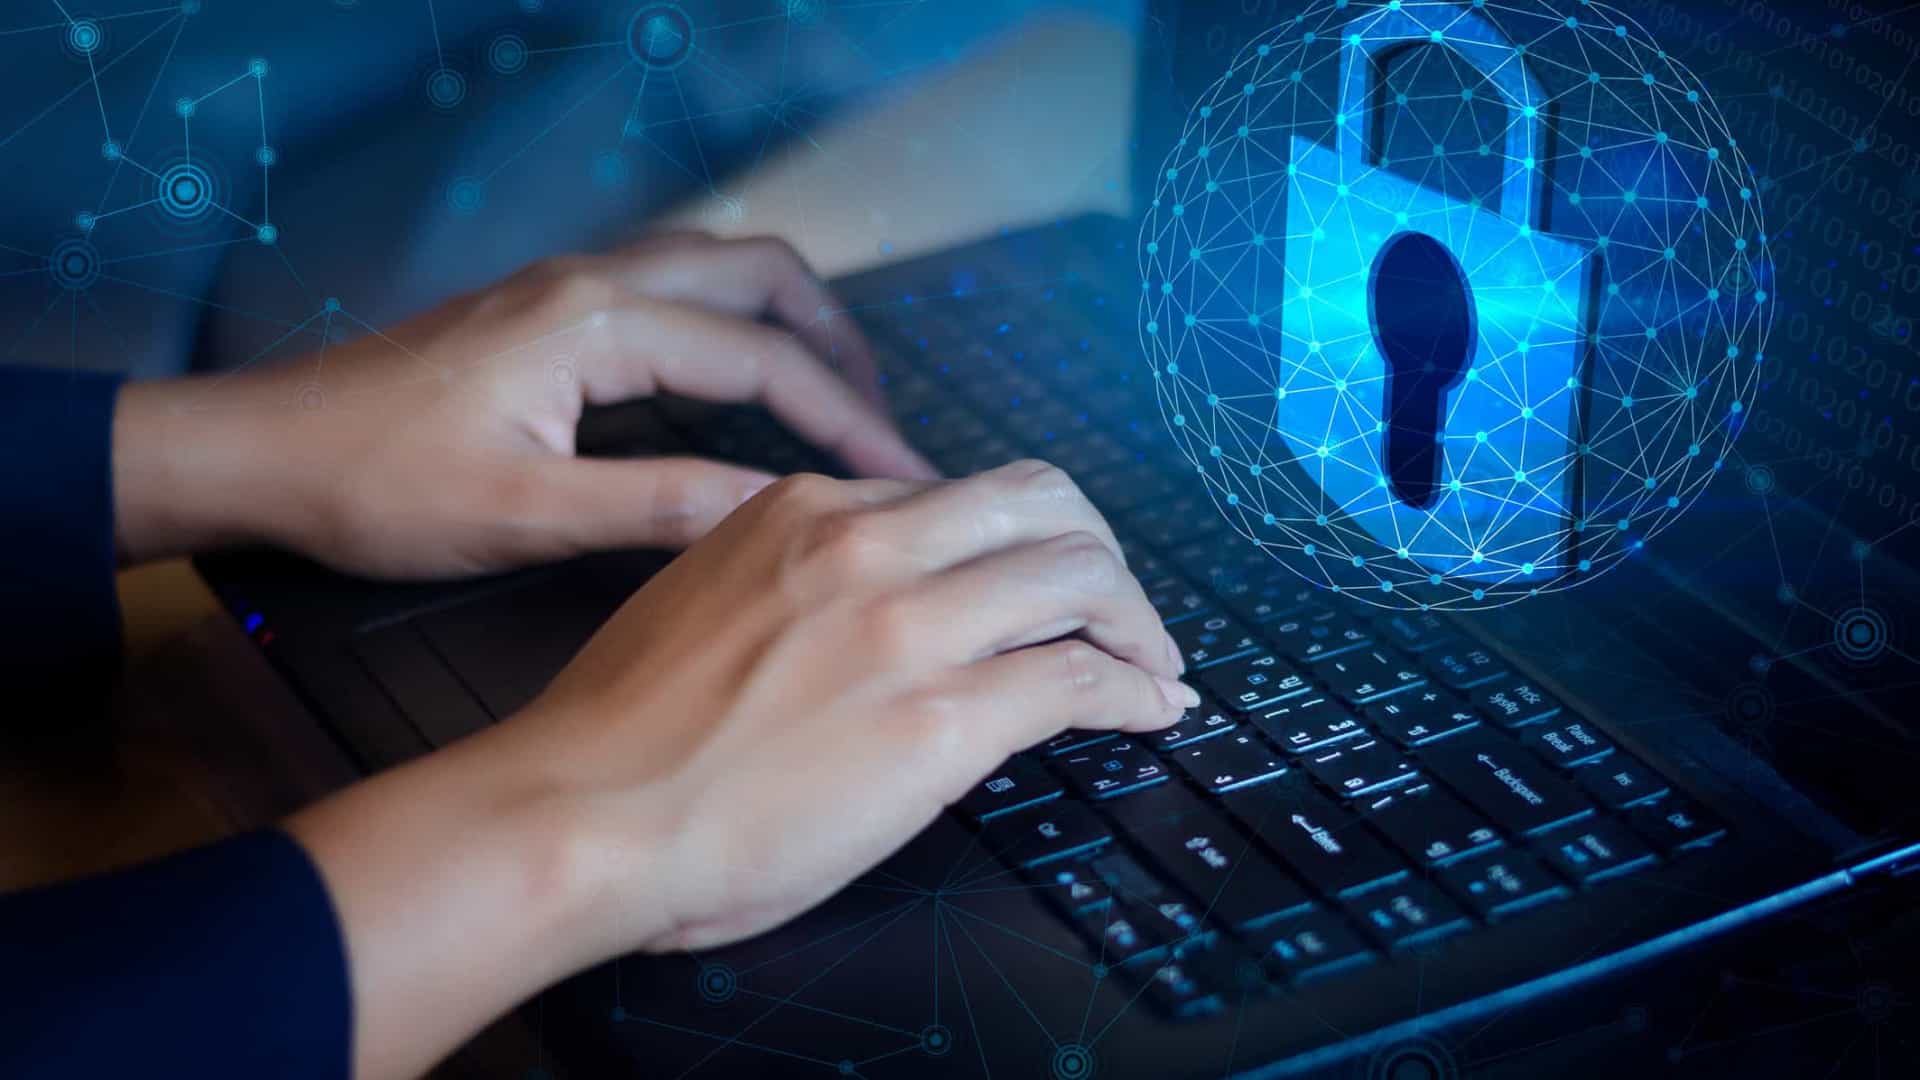 Cibersegurança - é melhor prevenir do que remediar